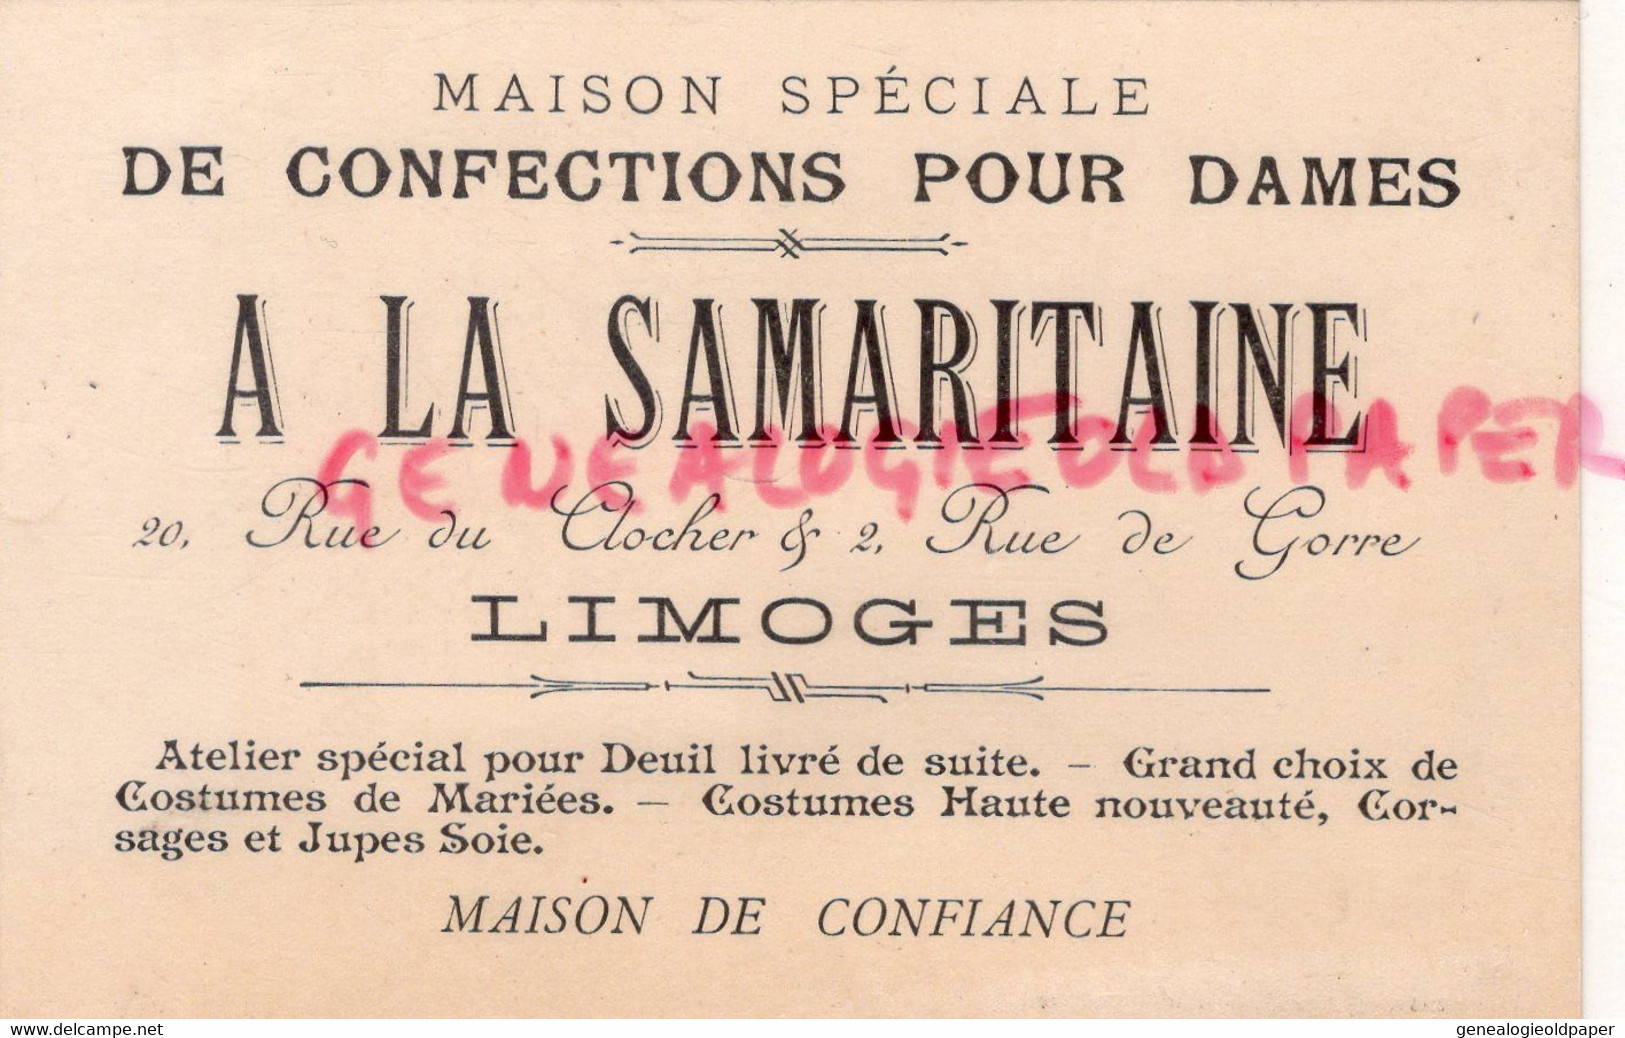 87- LIMOGES- RARE CARTE A LA SAMARITAINE -CONFECTIONS POUR DAMES-20 RUE DU CLOCHER -2 RUE DE GORRE-CONFECTION - Textile & Clothing